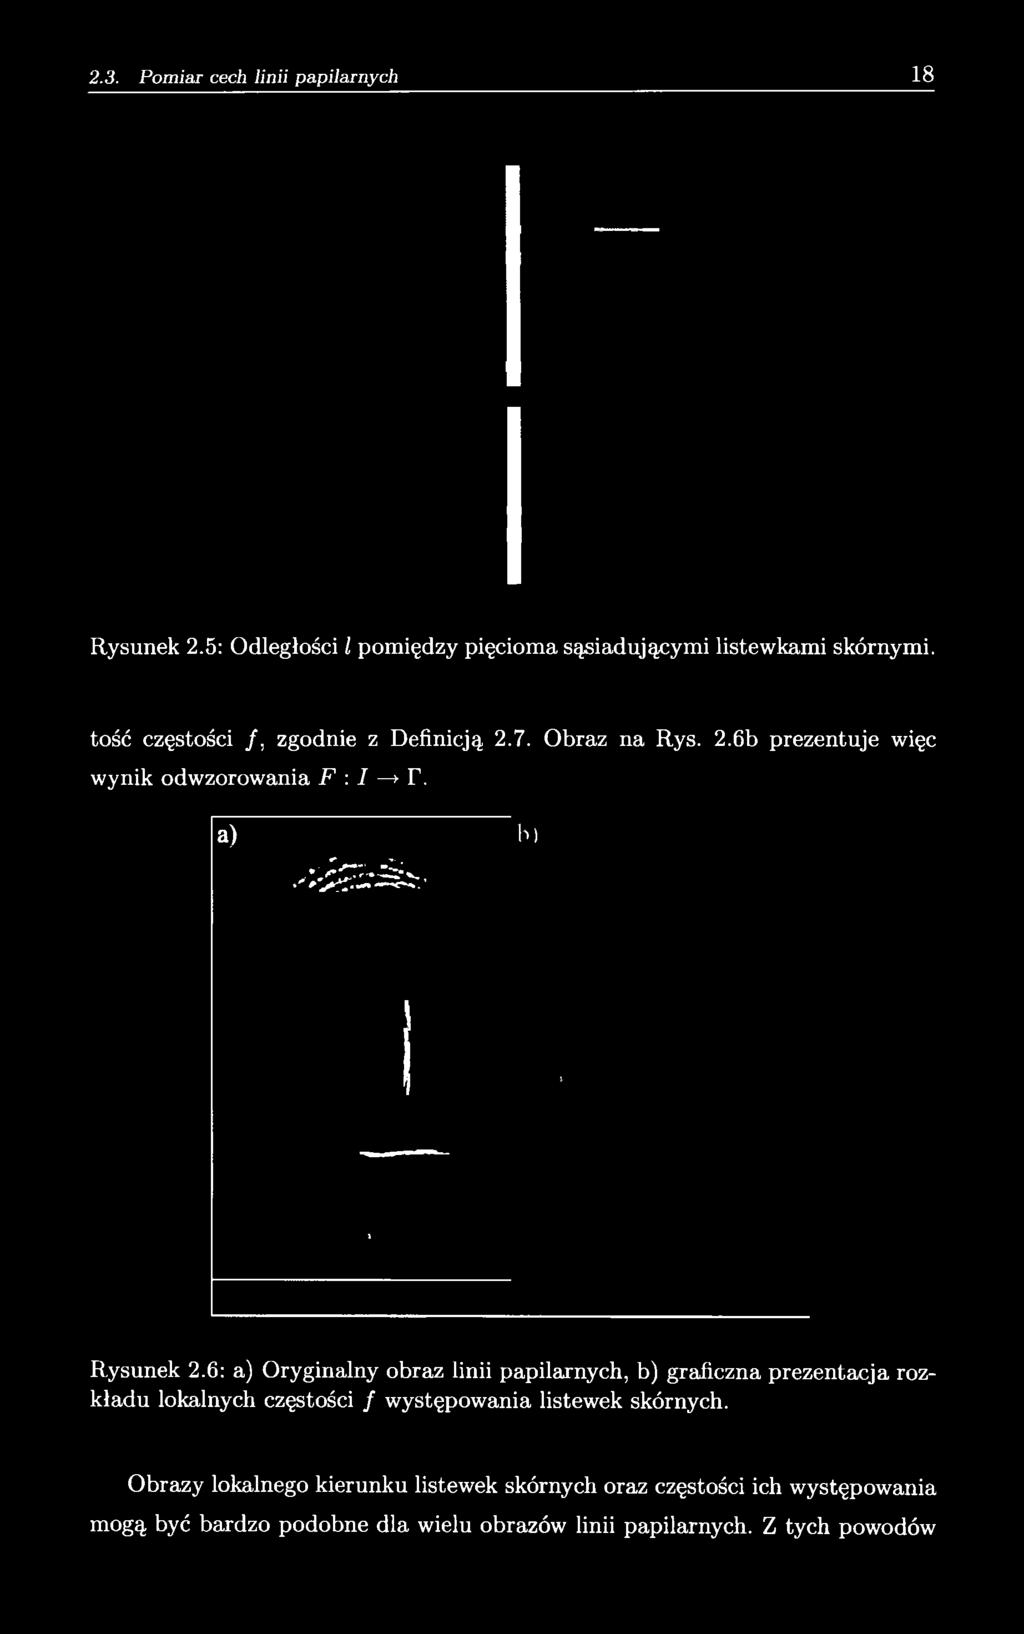 6: a) Oryginalny obraz linii papilarnych, b) graficzna prezentacja rozkładu